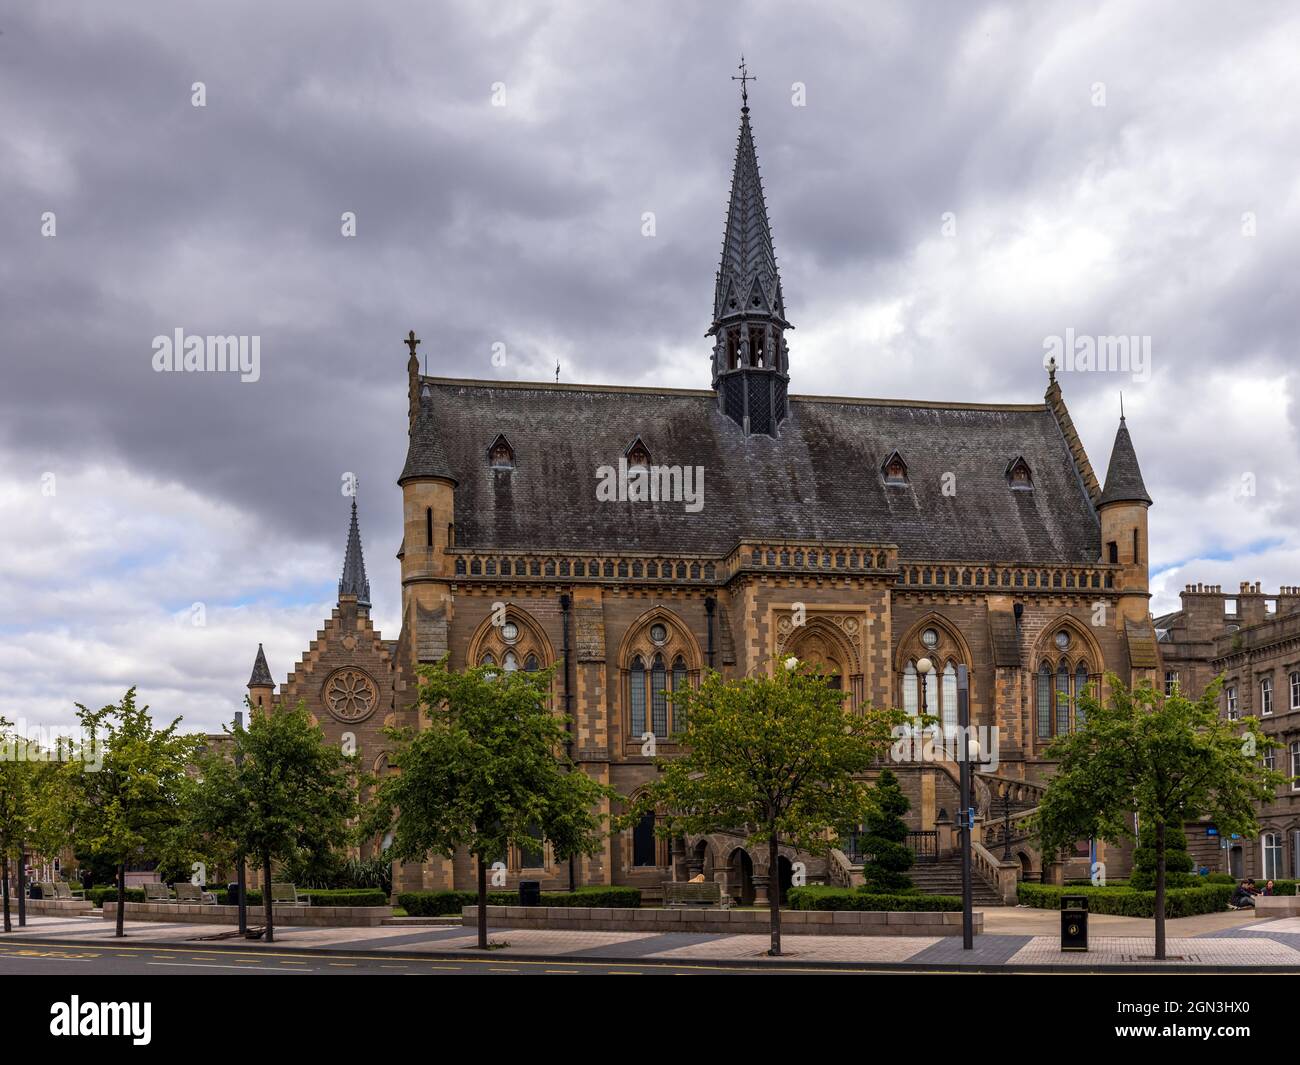 L'impressionnante galerie d'art et musée McManus à Dundee, en Écosse. Banque D'Images